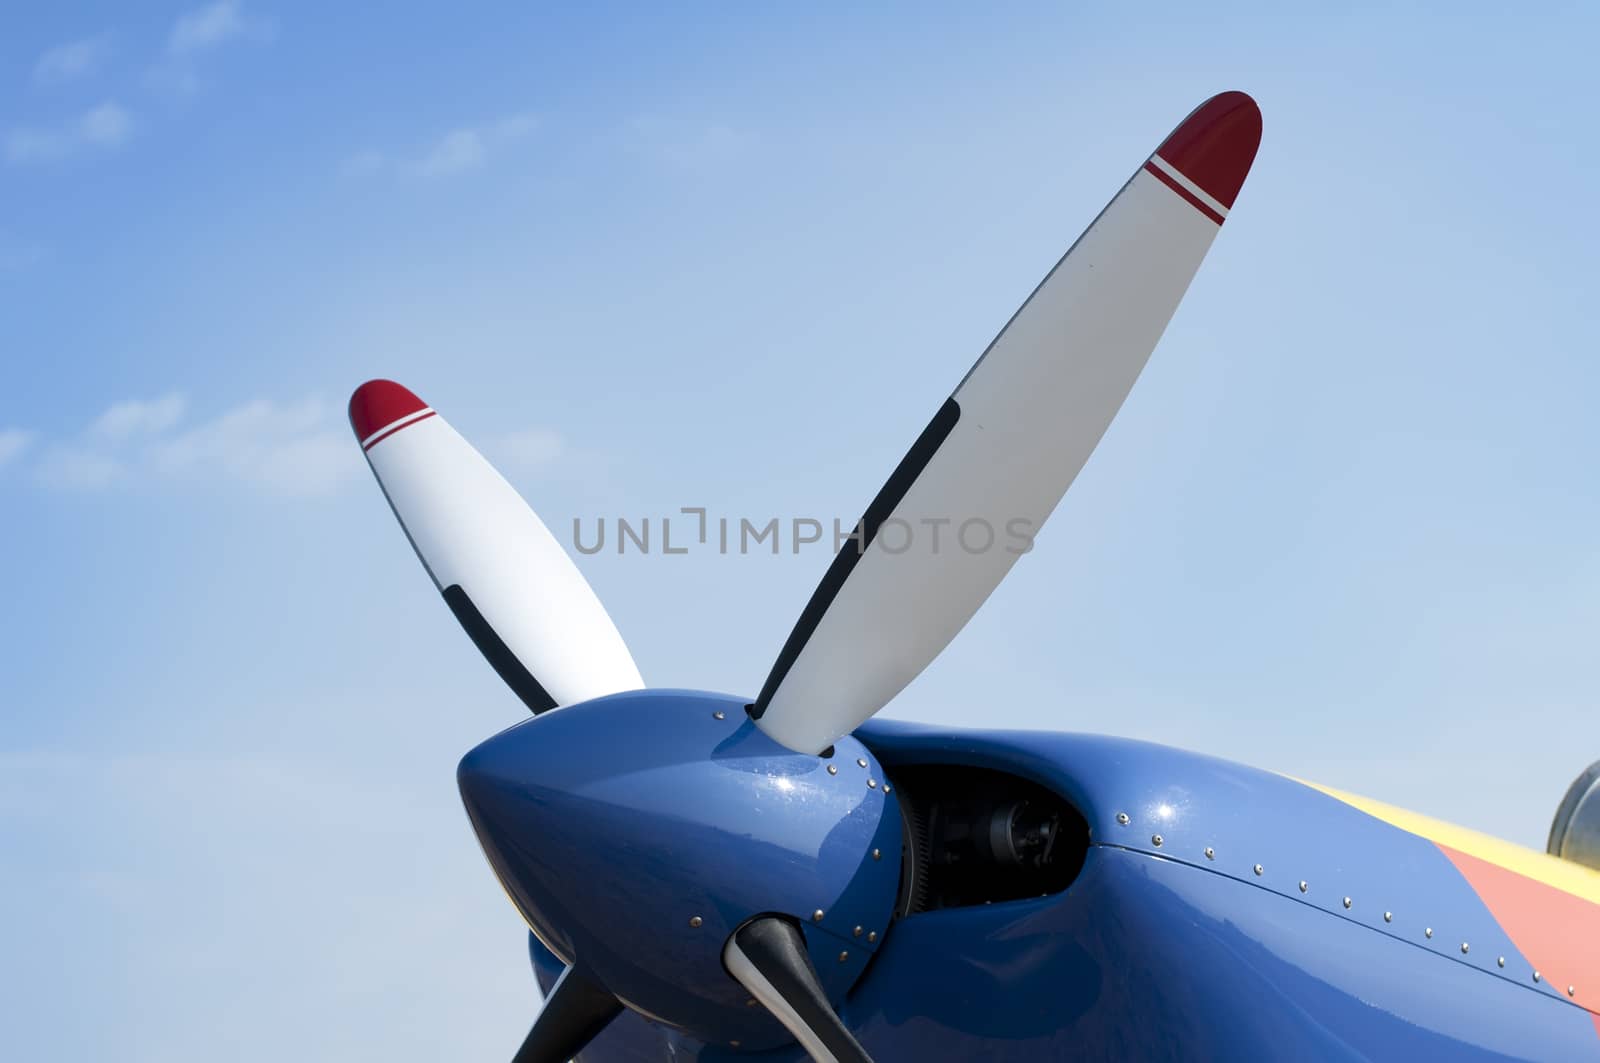 Plane propeller by deyan_georgiev